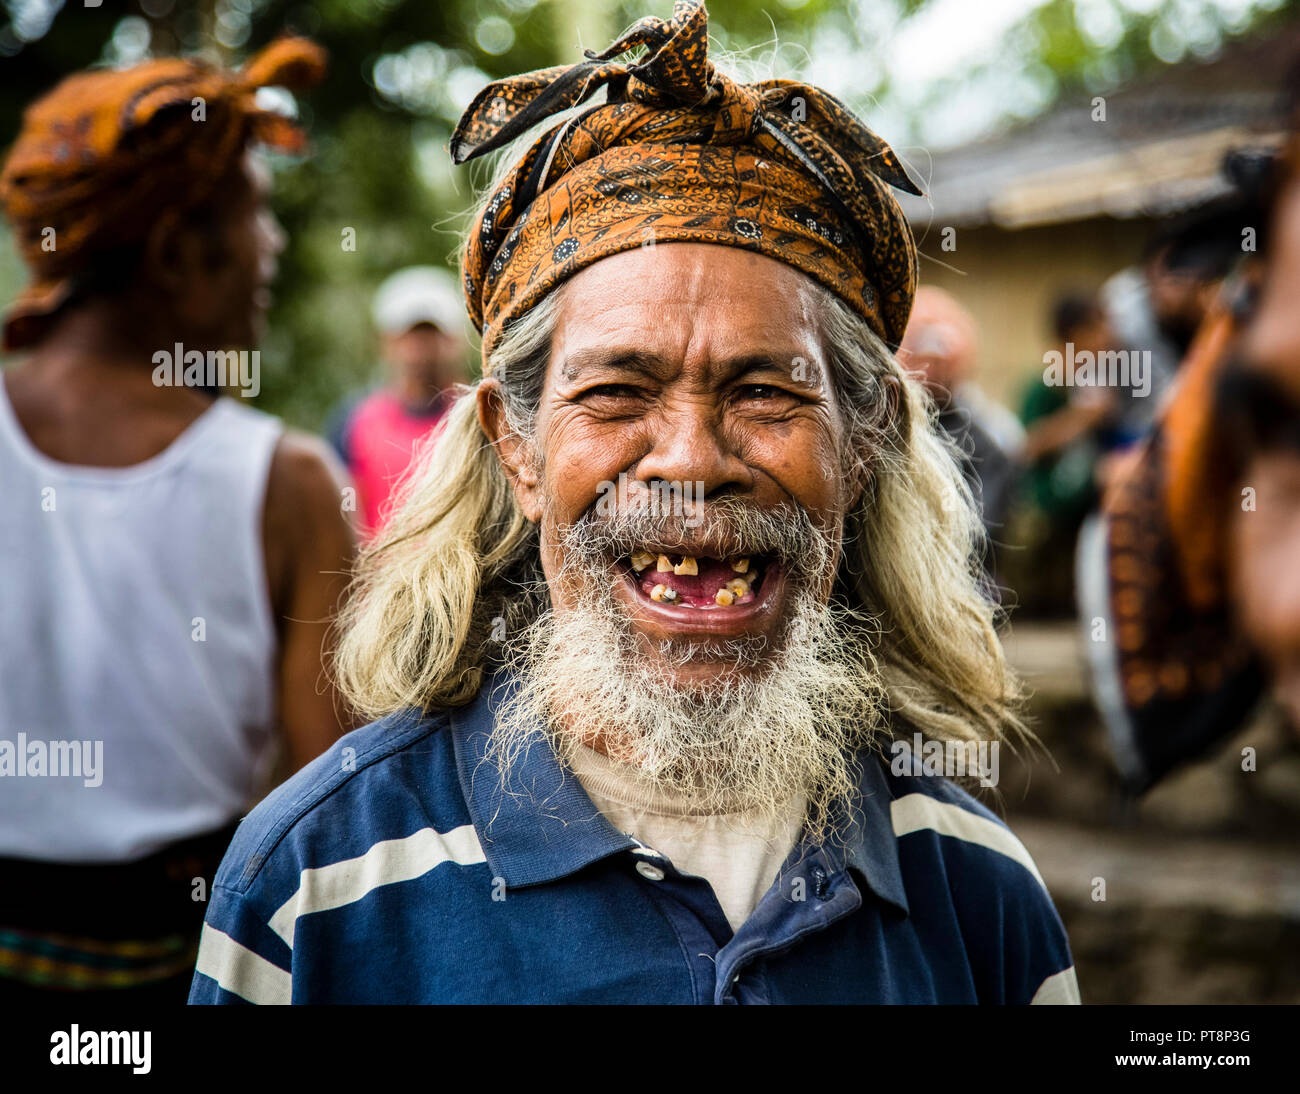 Humorous exchange between cultures, Sunda Islands, Indonesia Stock Photo